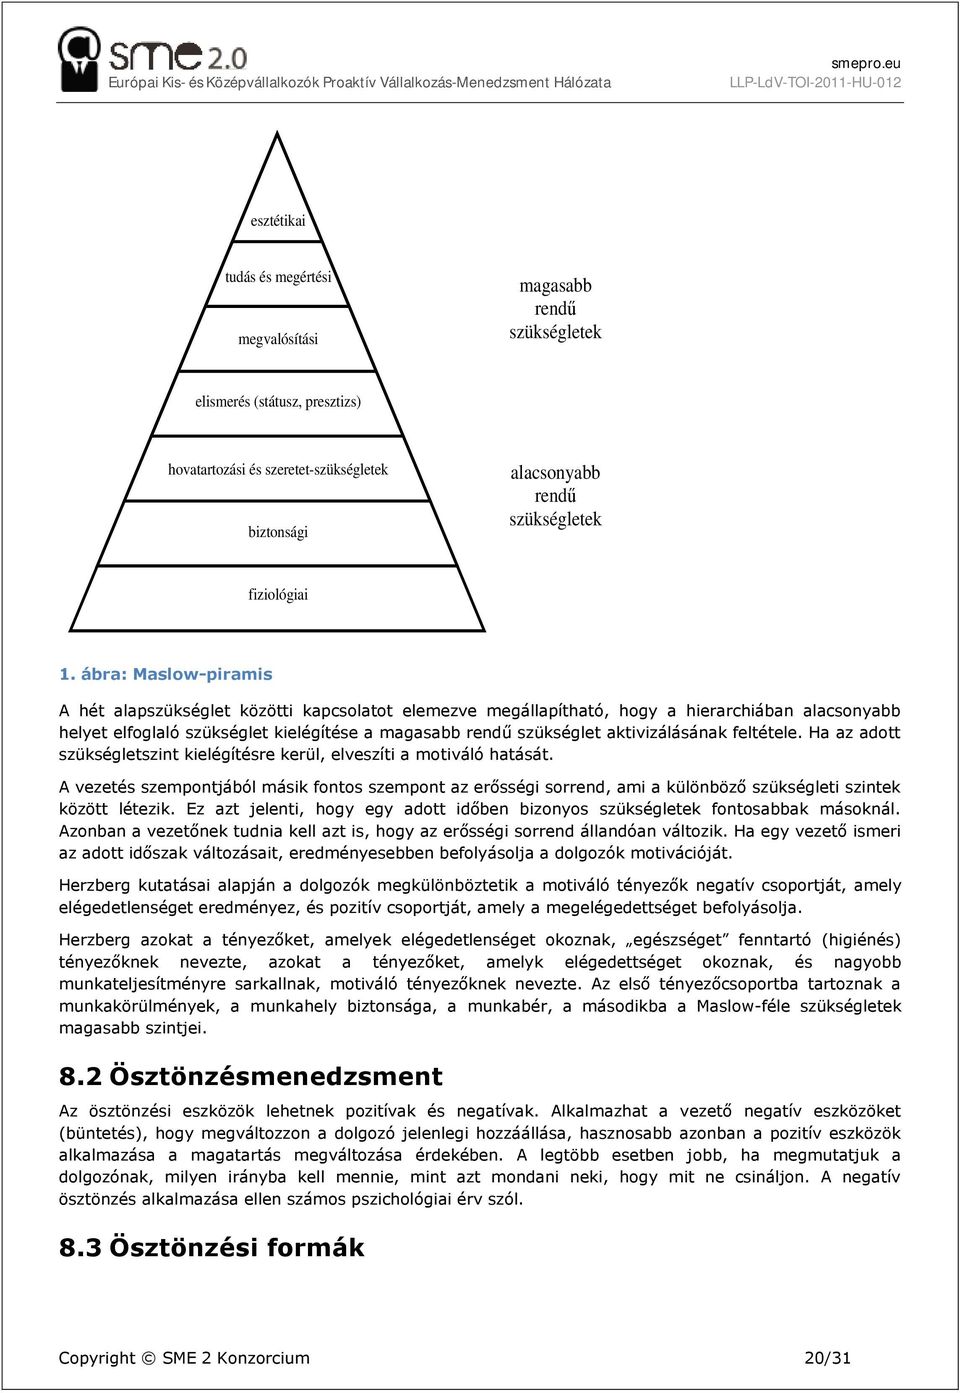 ábra: Maslw-piramis A hét alapszükséglet közötti kapcslatt elemezve megállapítható, hgy a hierarchiában alacsnyabb helyet elfglaló szükséglet kielégítése a magasabb rendű szükséglet aktivizálásának